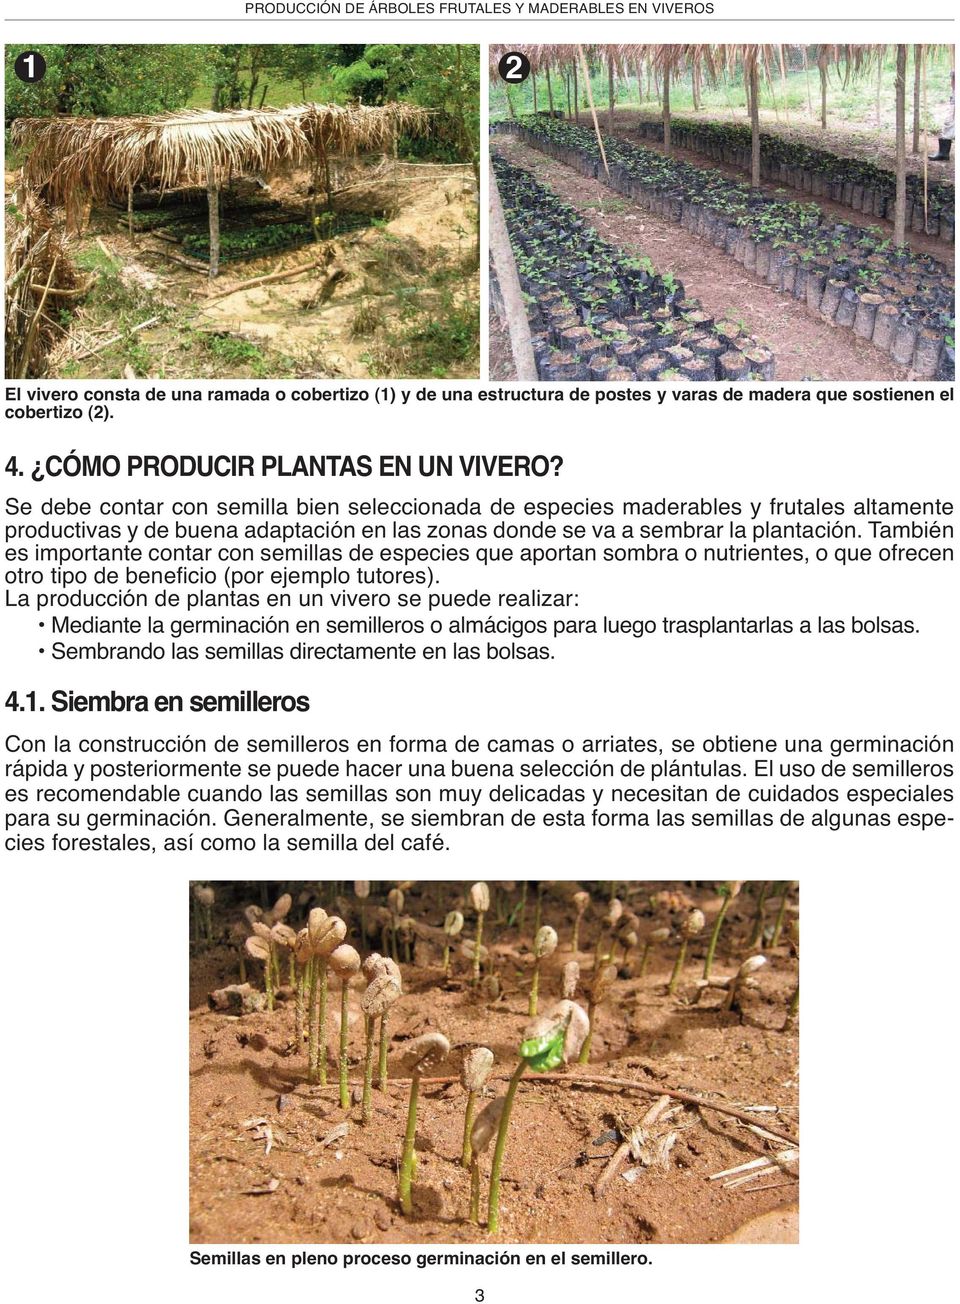 PRODUCCIÓN DE ÁRBOLES FRUTALES Y MADERABLES EN VIVEROS - PDF Free Download